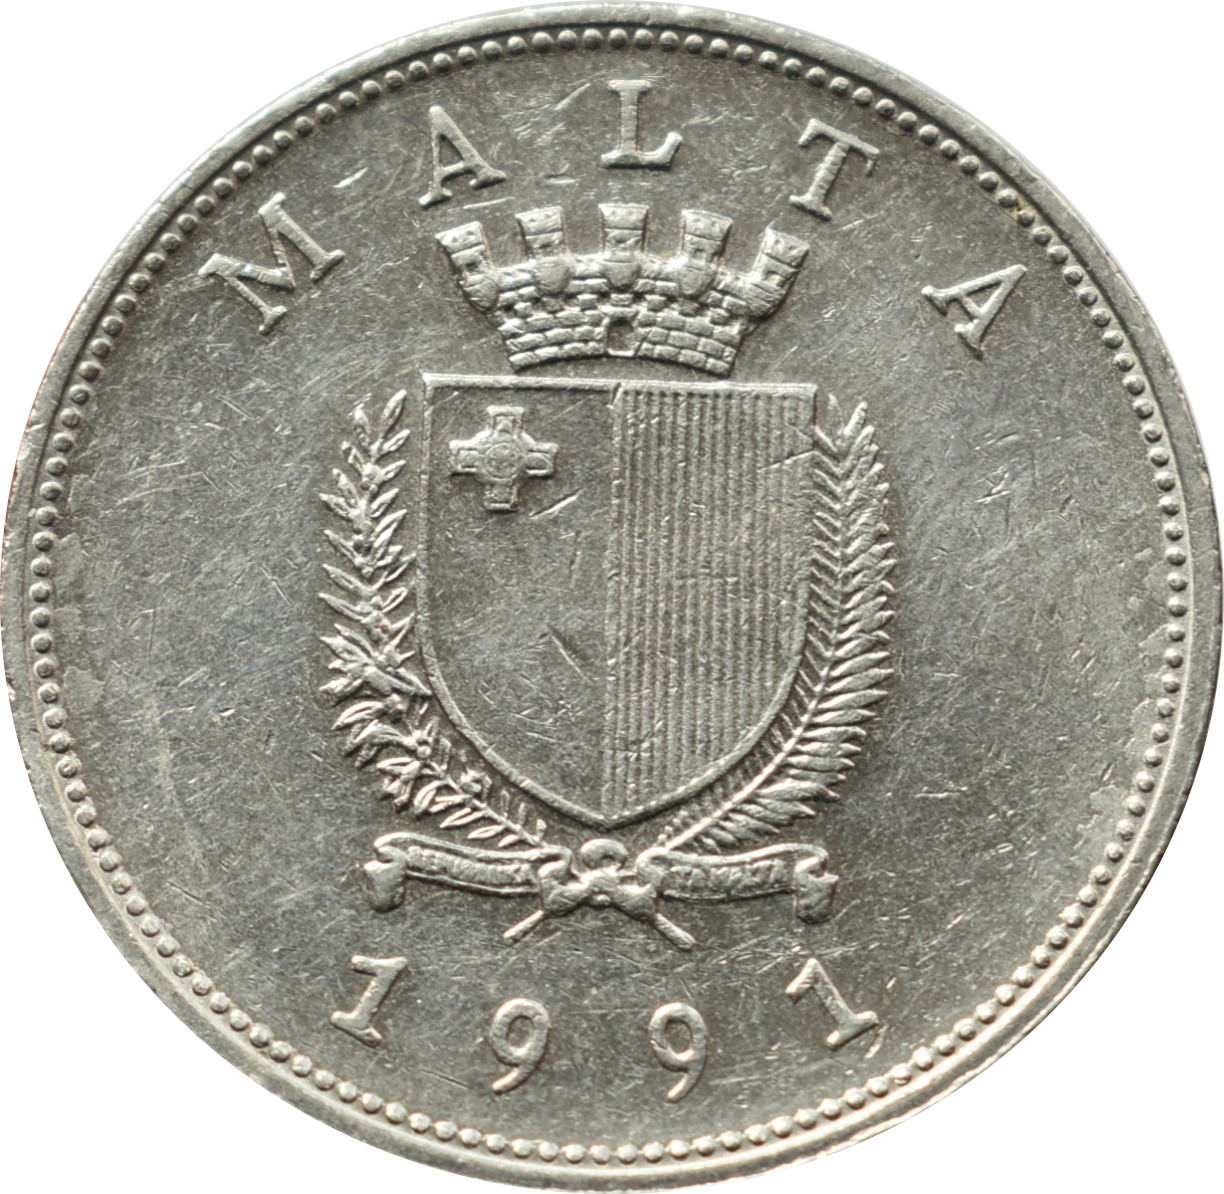 Malta 1 Lira 1991